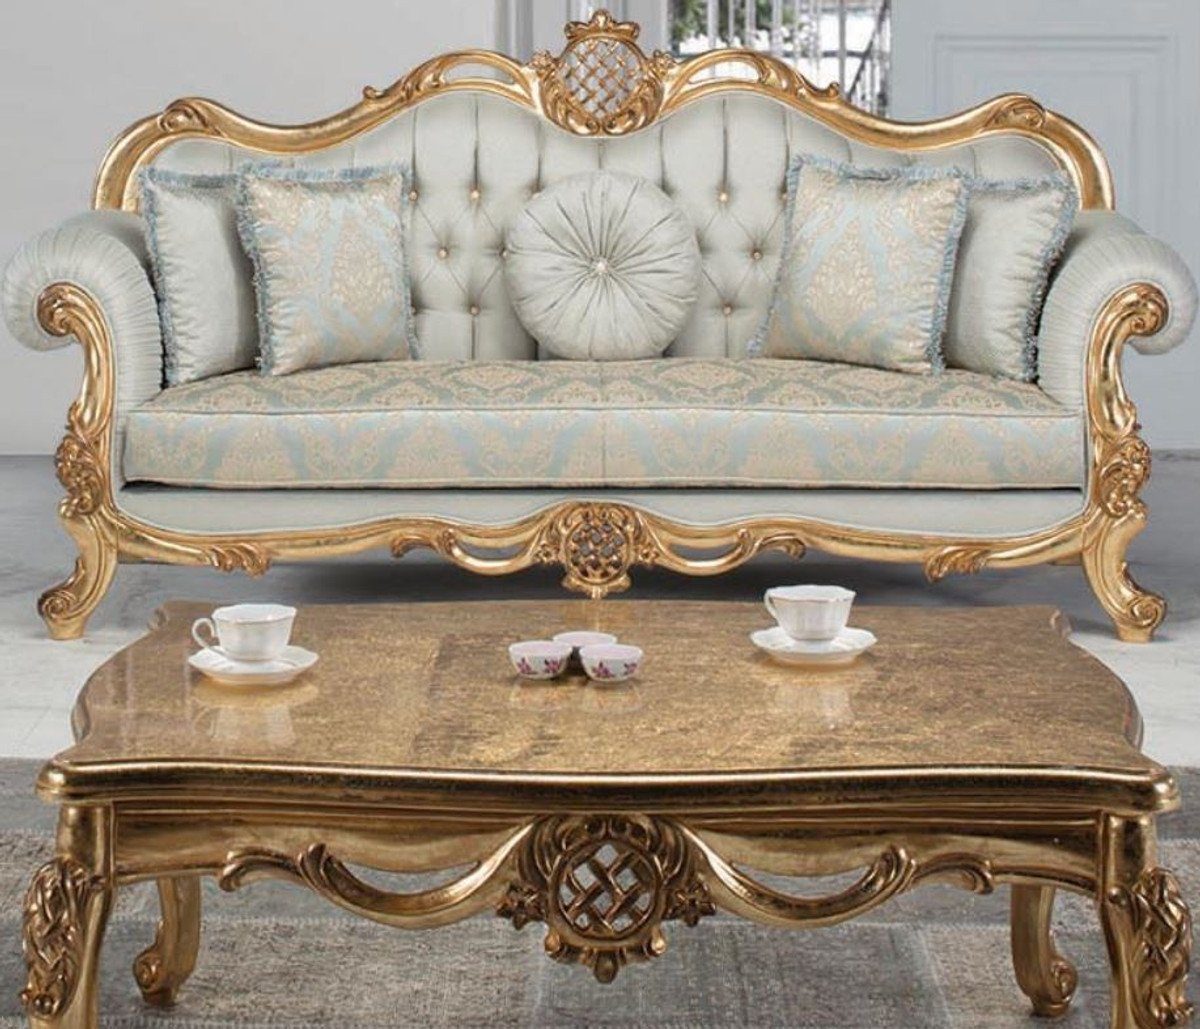 Casa Padrino Couchtisch Luxus Barock Couchtisch Antik Gold 118 x 87 x H. 50 cm - Massivholz Wohnzimmertisch - Möbel im Barockstil